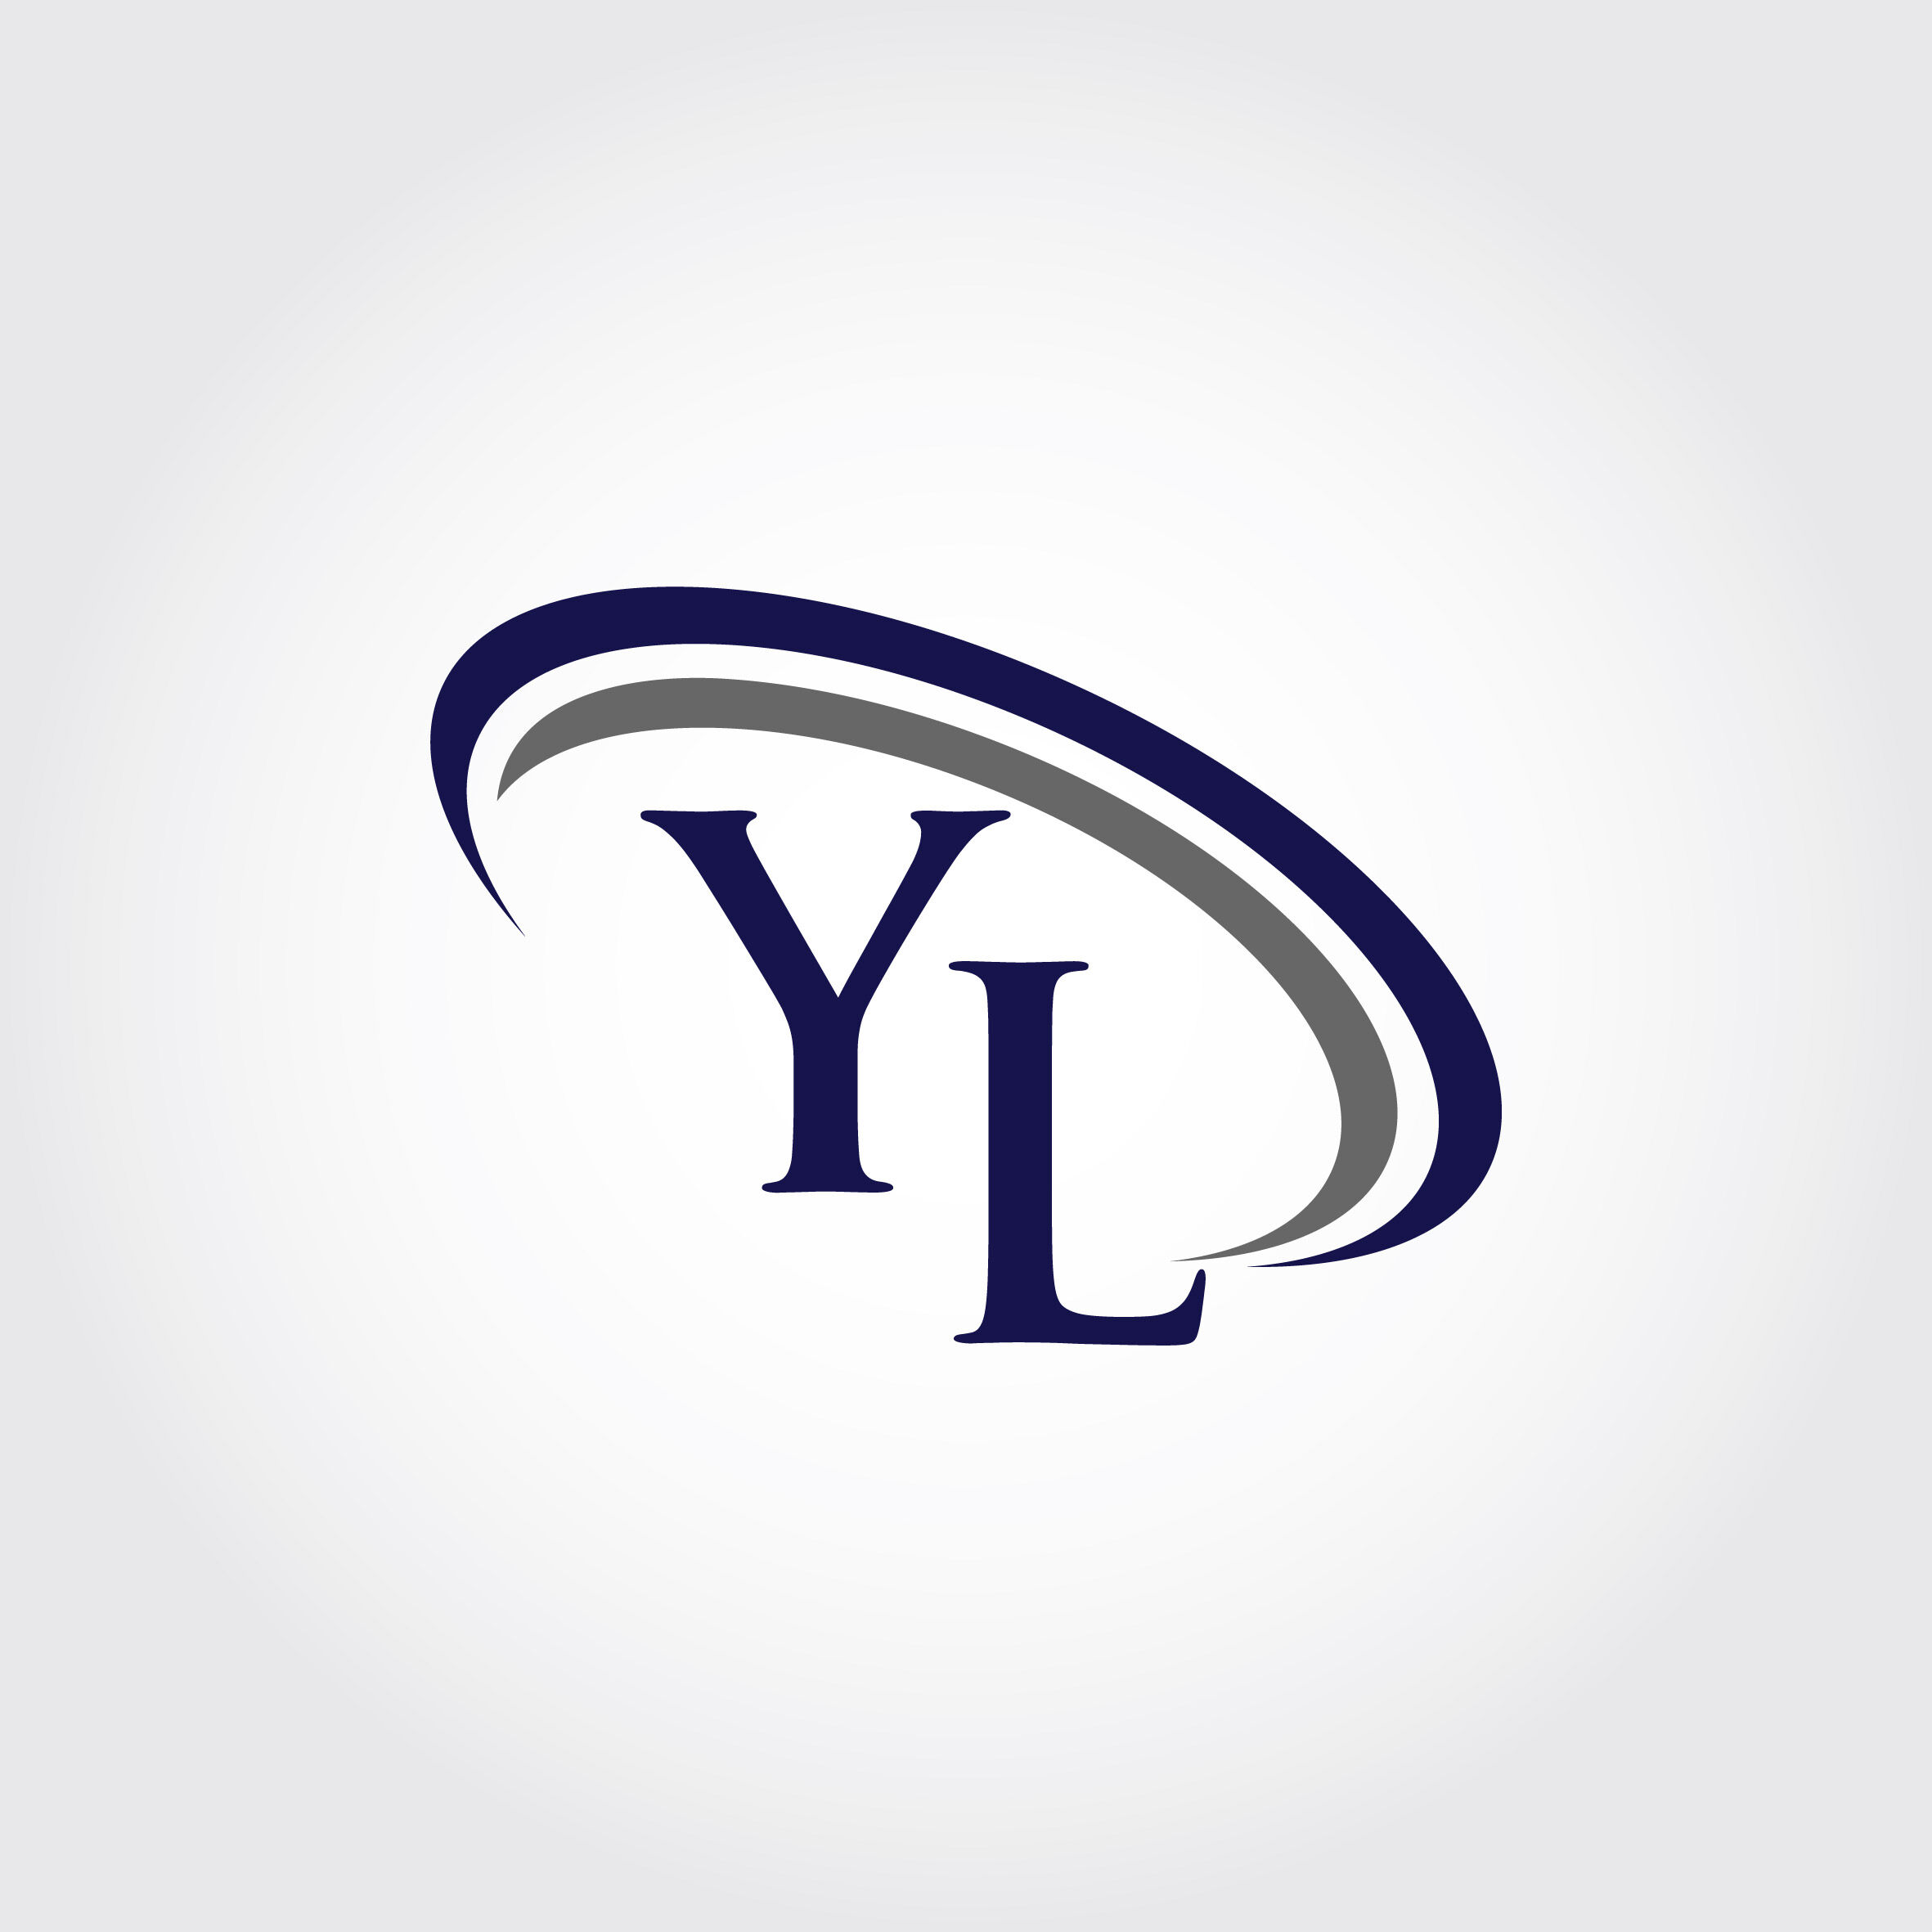 Premium Vector  Monogram yl logo design